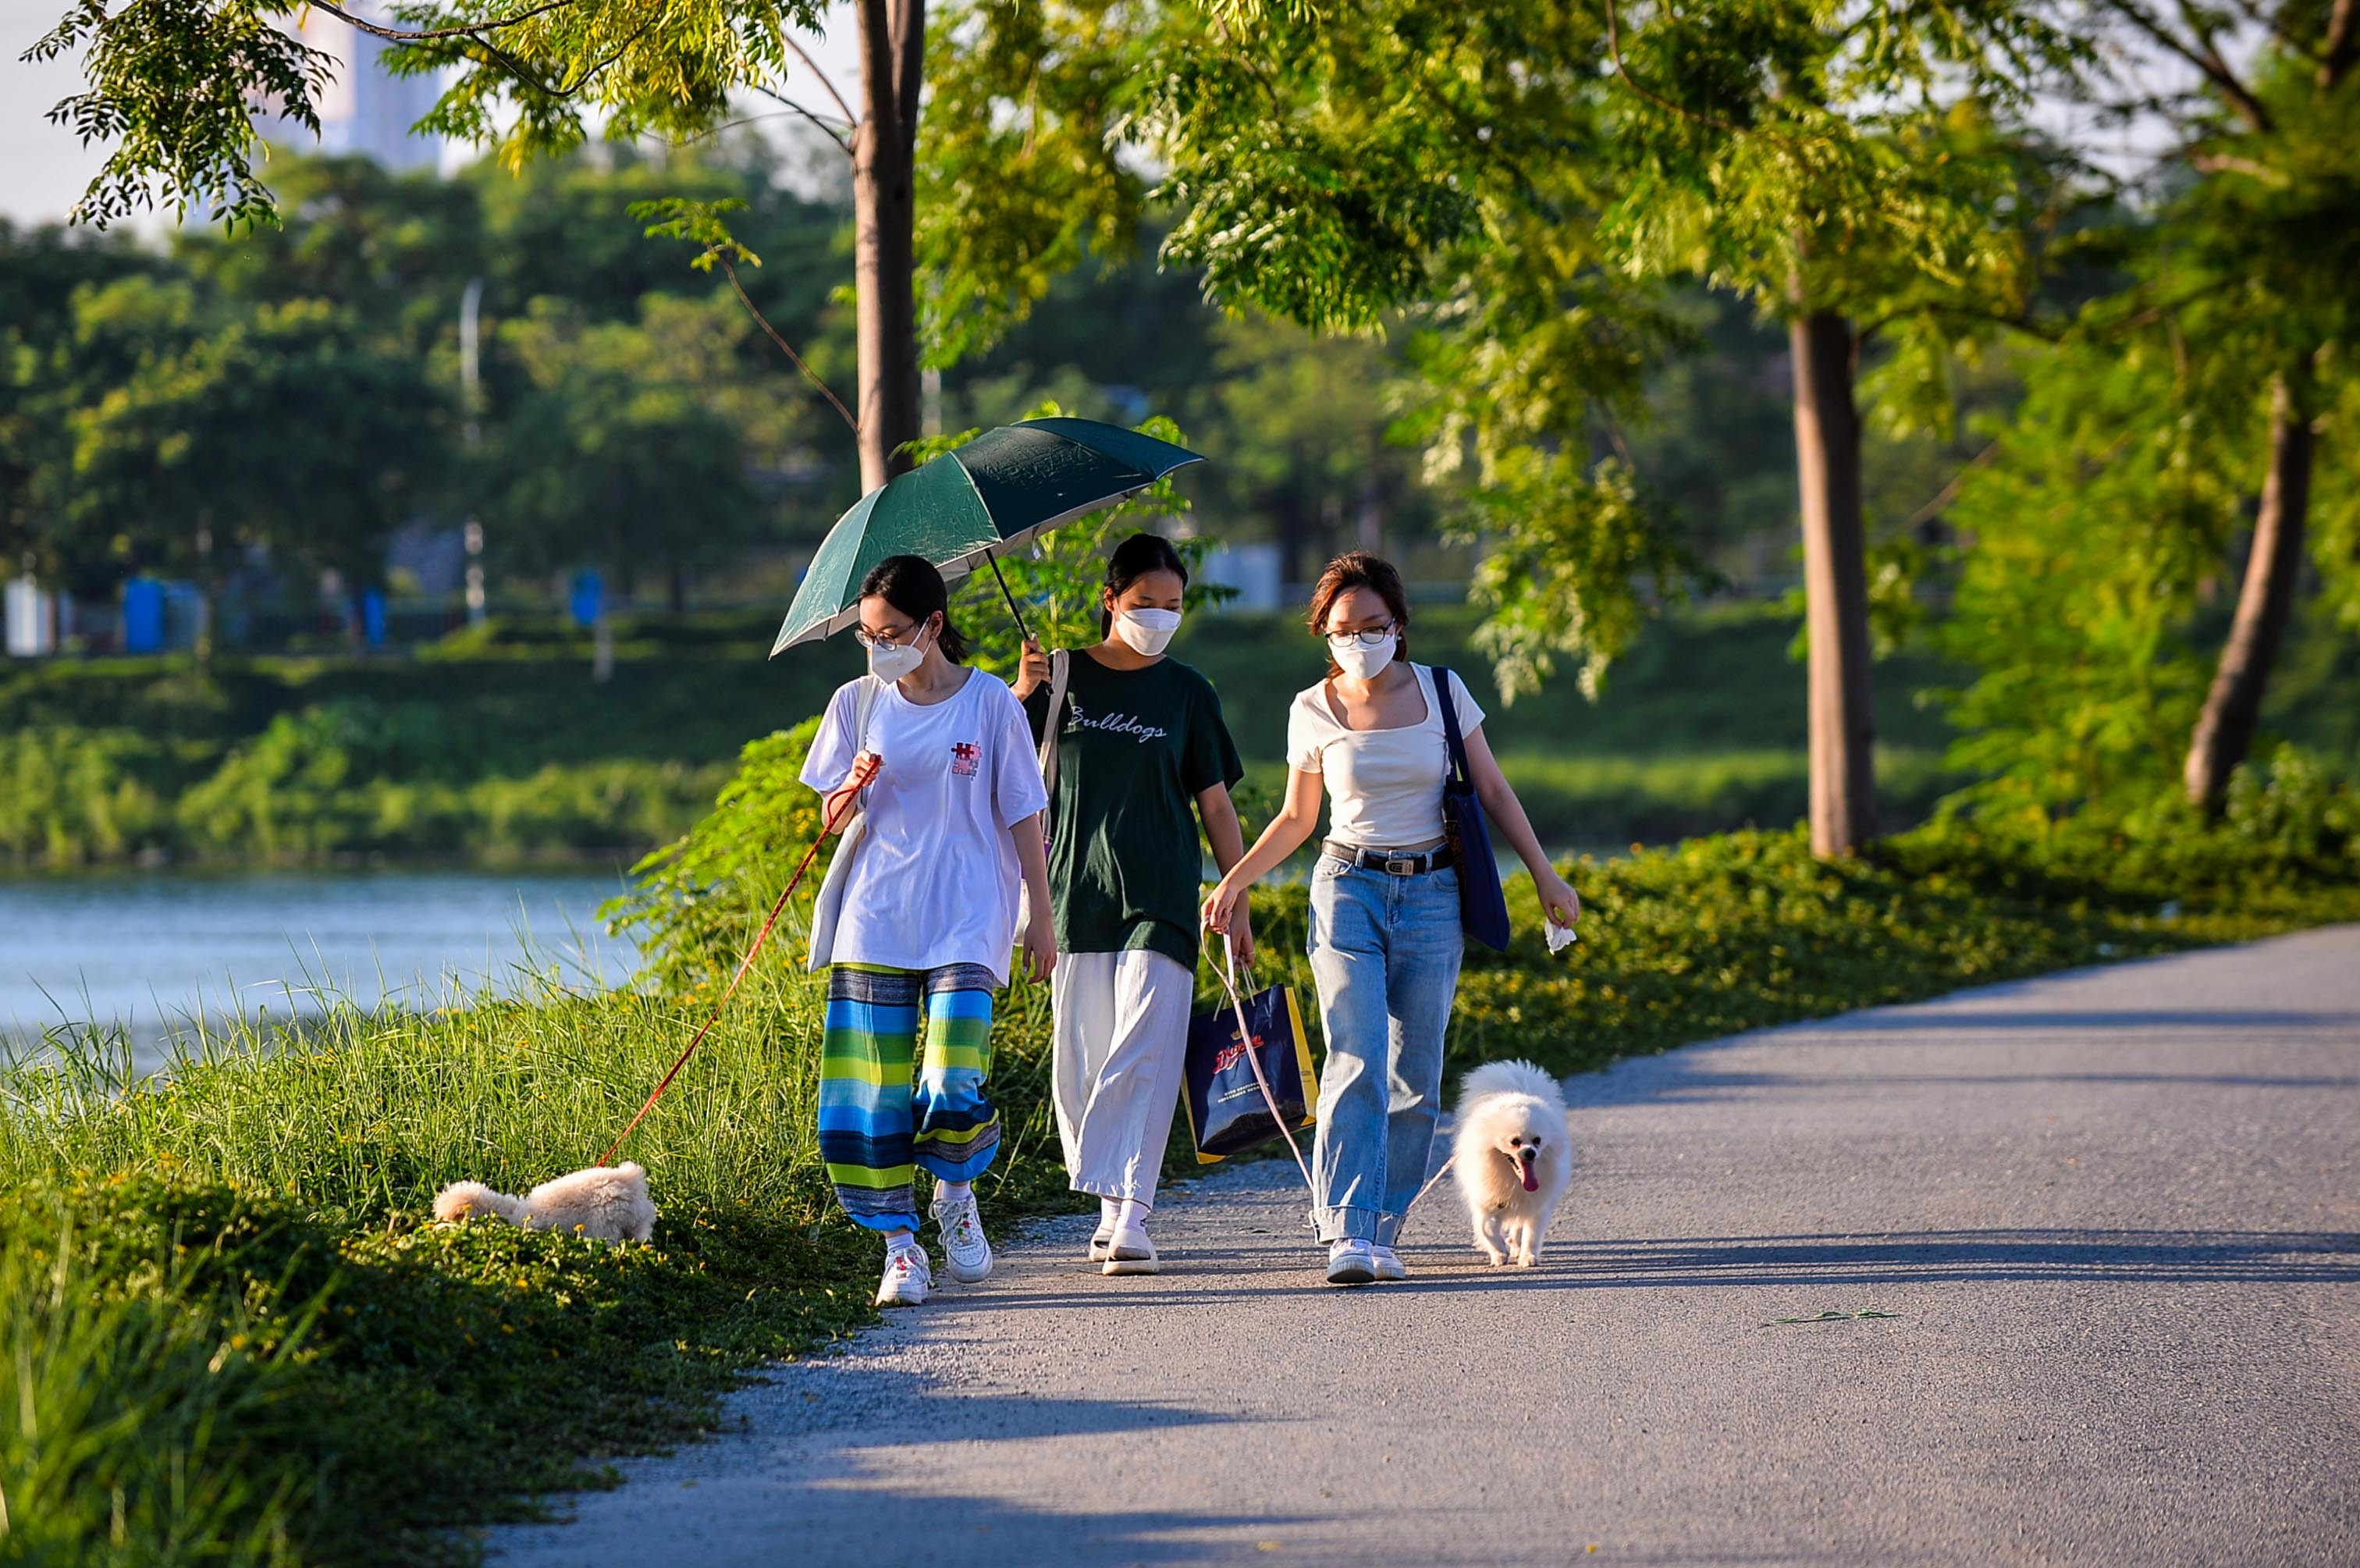 Ngạc nhiên khi lần đầu Hà Nội có công viên dành cho chó, Trang (18 tuổi) liền cùng bạn bè dẫn theo thú cưng đến để vui chơi. 